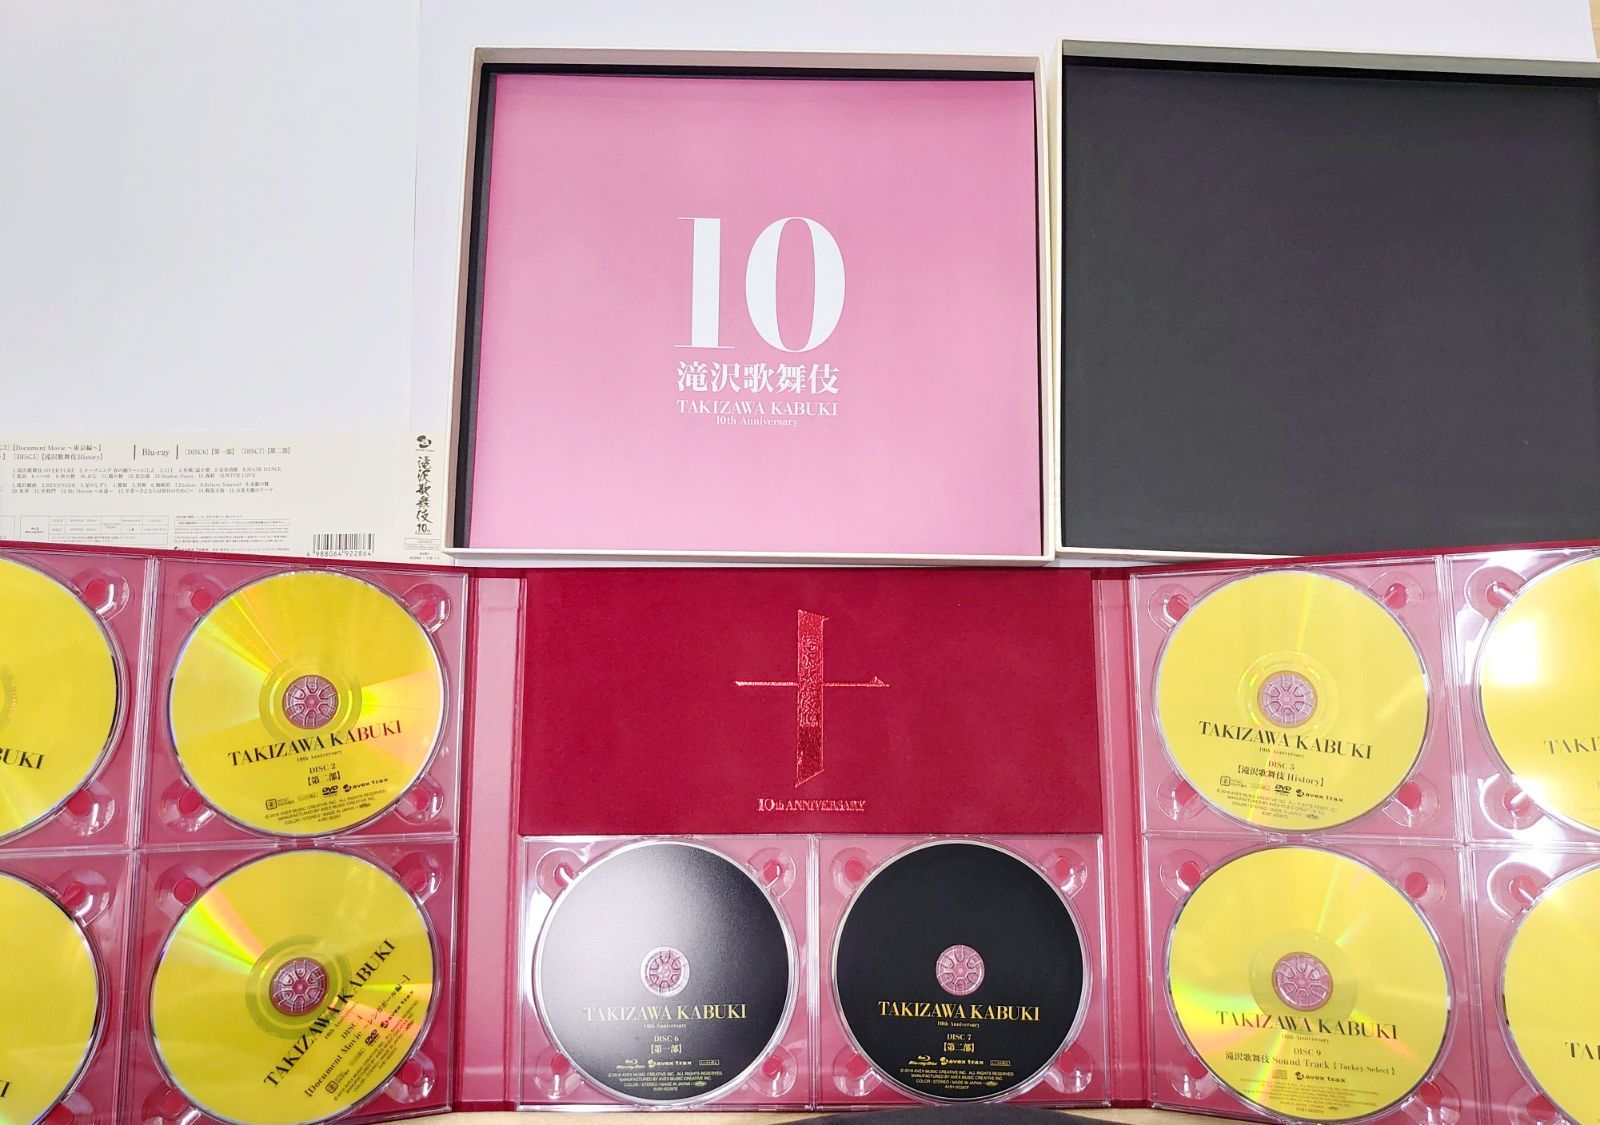 こちらは 滝沢歌舞伎 10th Anniversary よ〜いやさぁ〜盤 限定商品 ございます